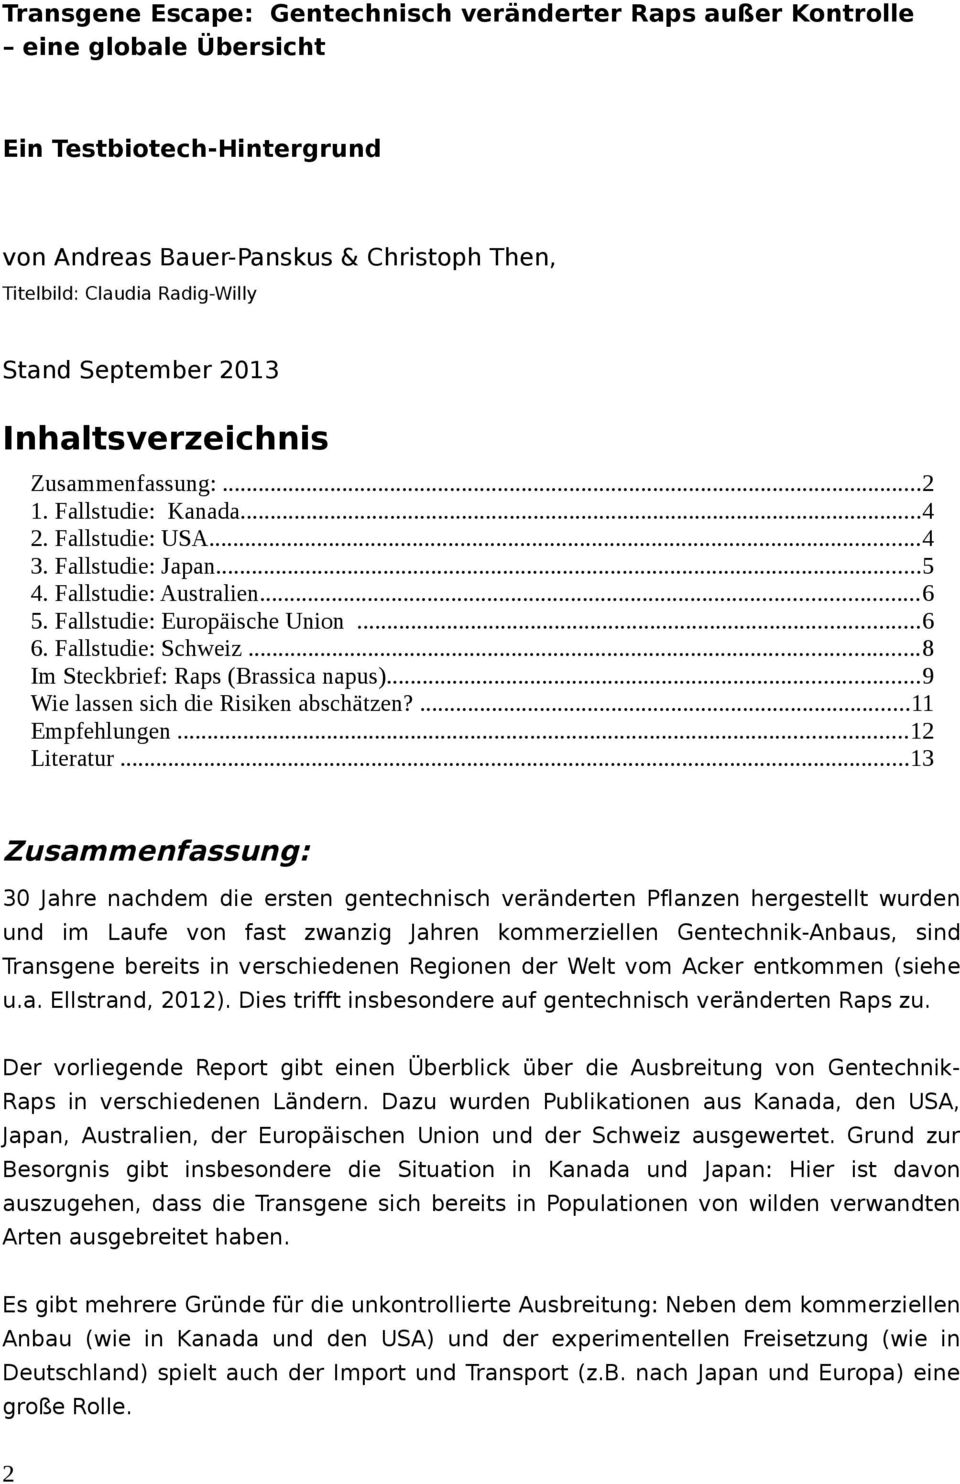 Fallstudie: Schweiz...8 Im Steckbrief: Raps (Brassica napus)...9 Wie lassen sich die Risiken abschätzen?...11 Empfehlungen...12 Literatur.